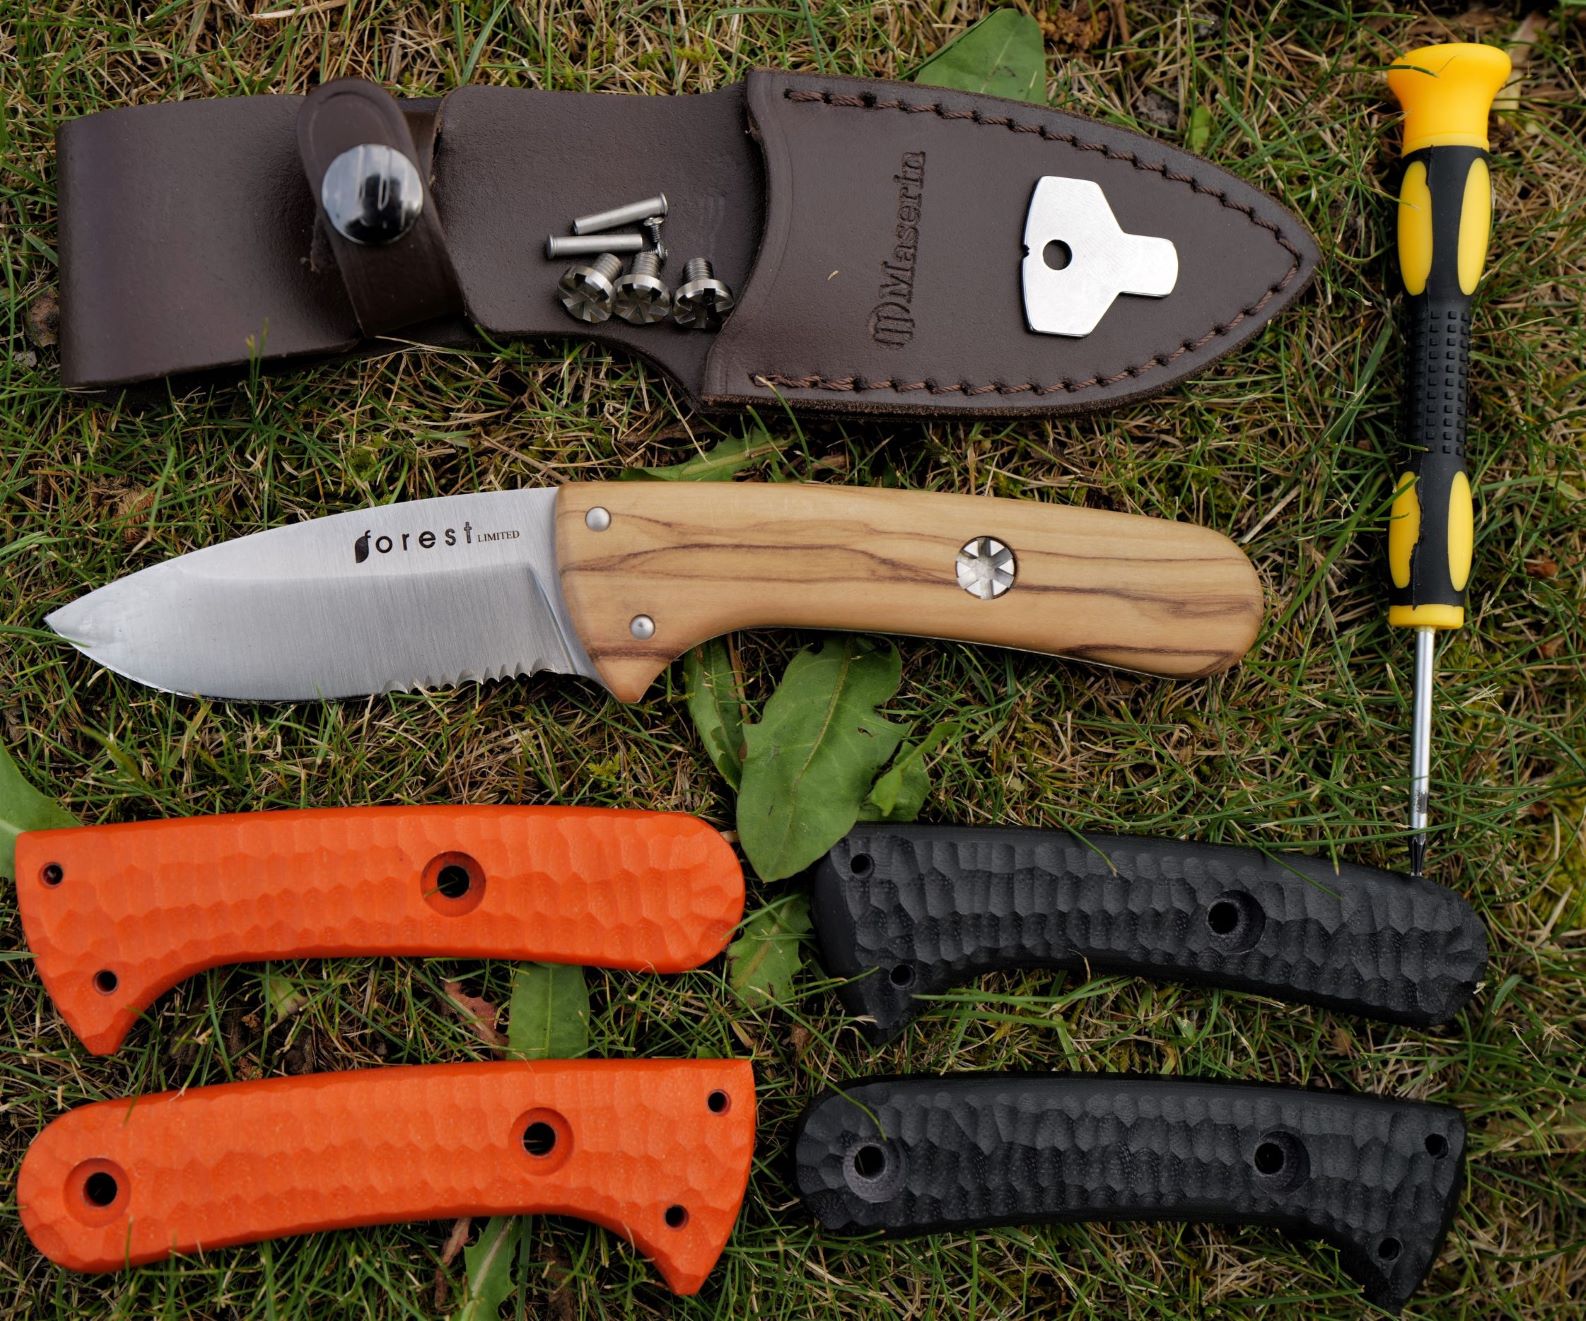 Il contenuto della confezione di Forest Hunting Limited comprende il coltello con il manico in olivo, il fodero in pelle, le guancette di ricambio in resina G10 arancioni e nere, e gli utensili per sostituirle.